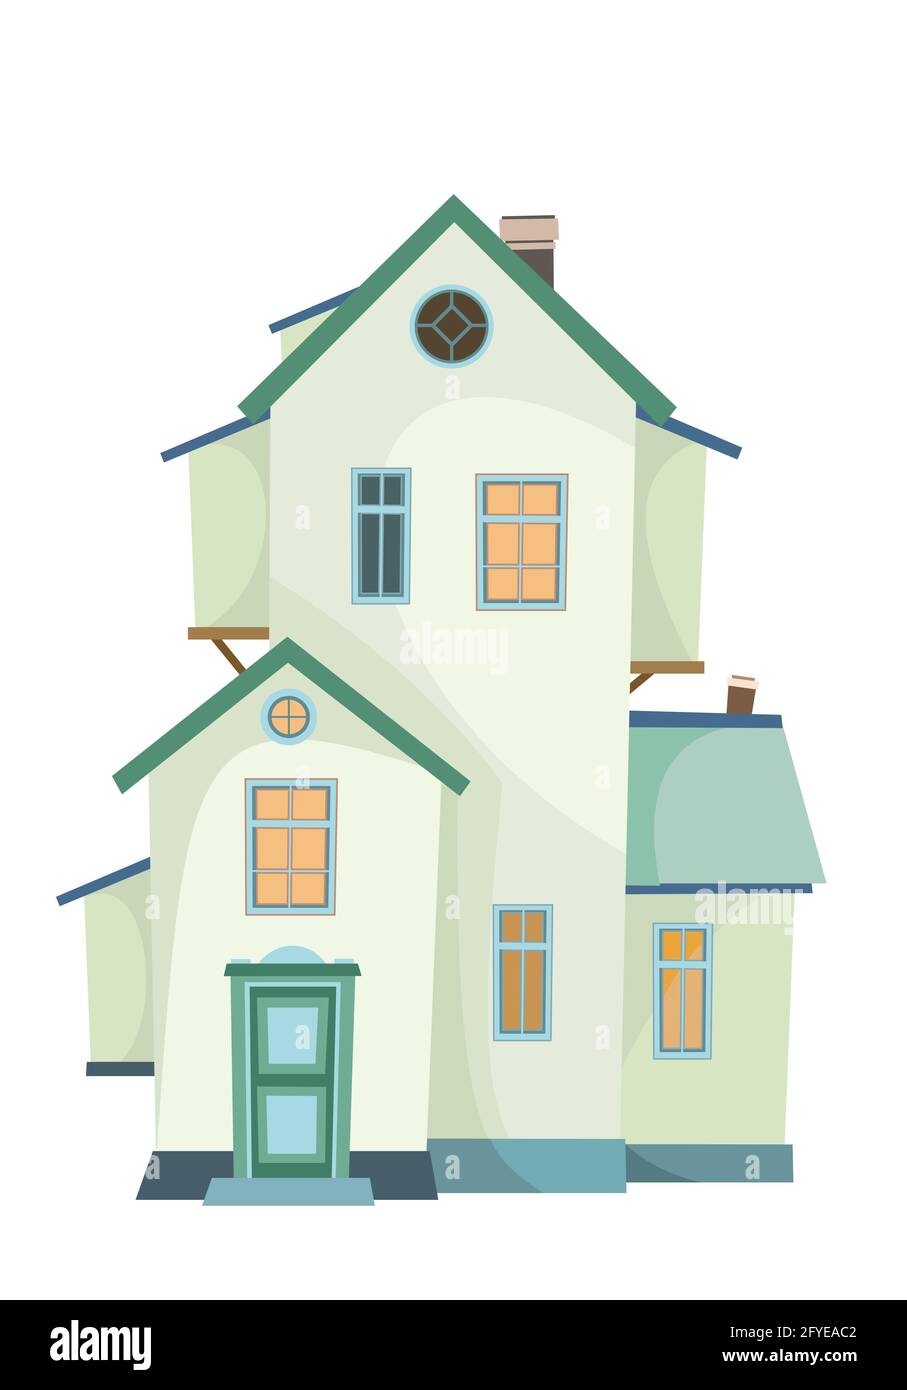 Une maison de deux étages avec une fenêtre dans le grenier. Confortable maison rurale simple dans un style européen traditionnel. Maison agréable. Isolé sur blanc Illustration de Vecteur